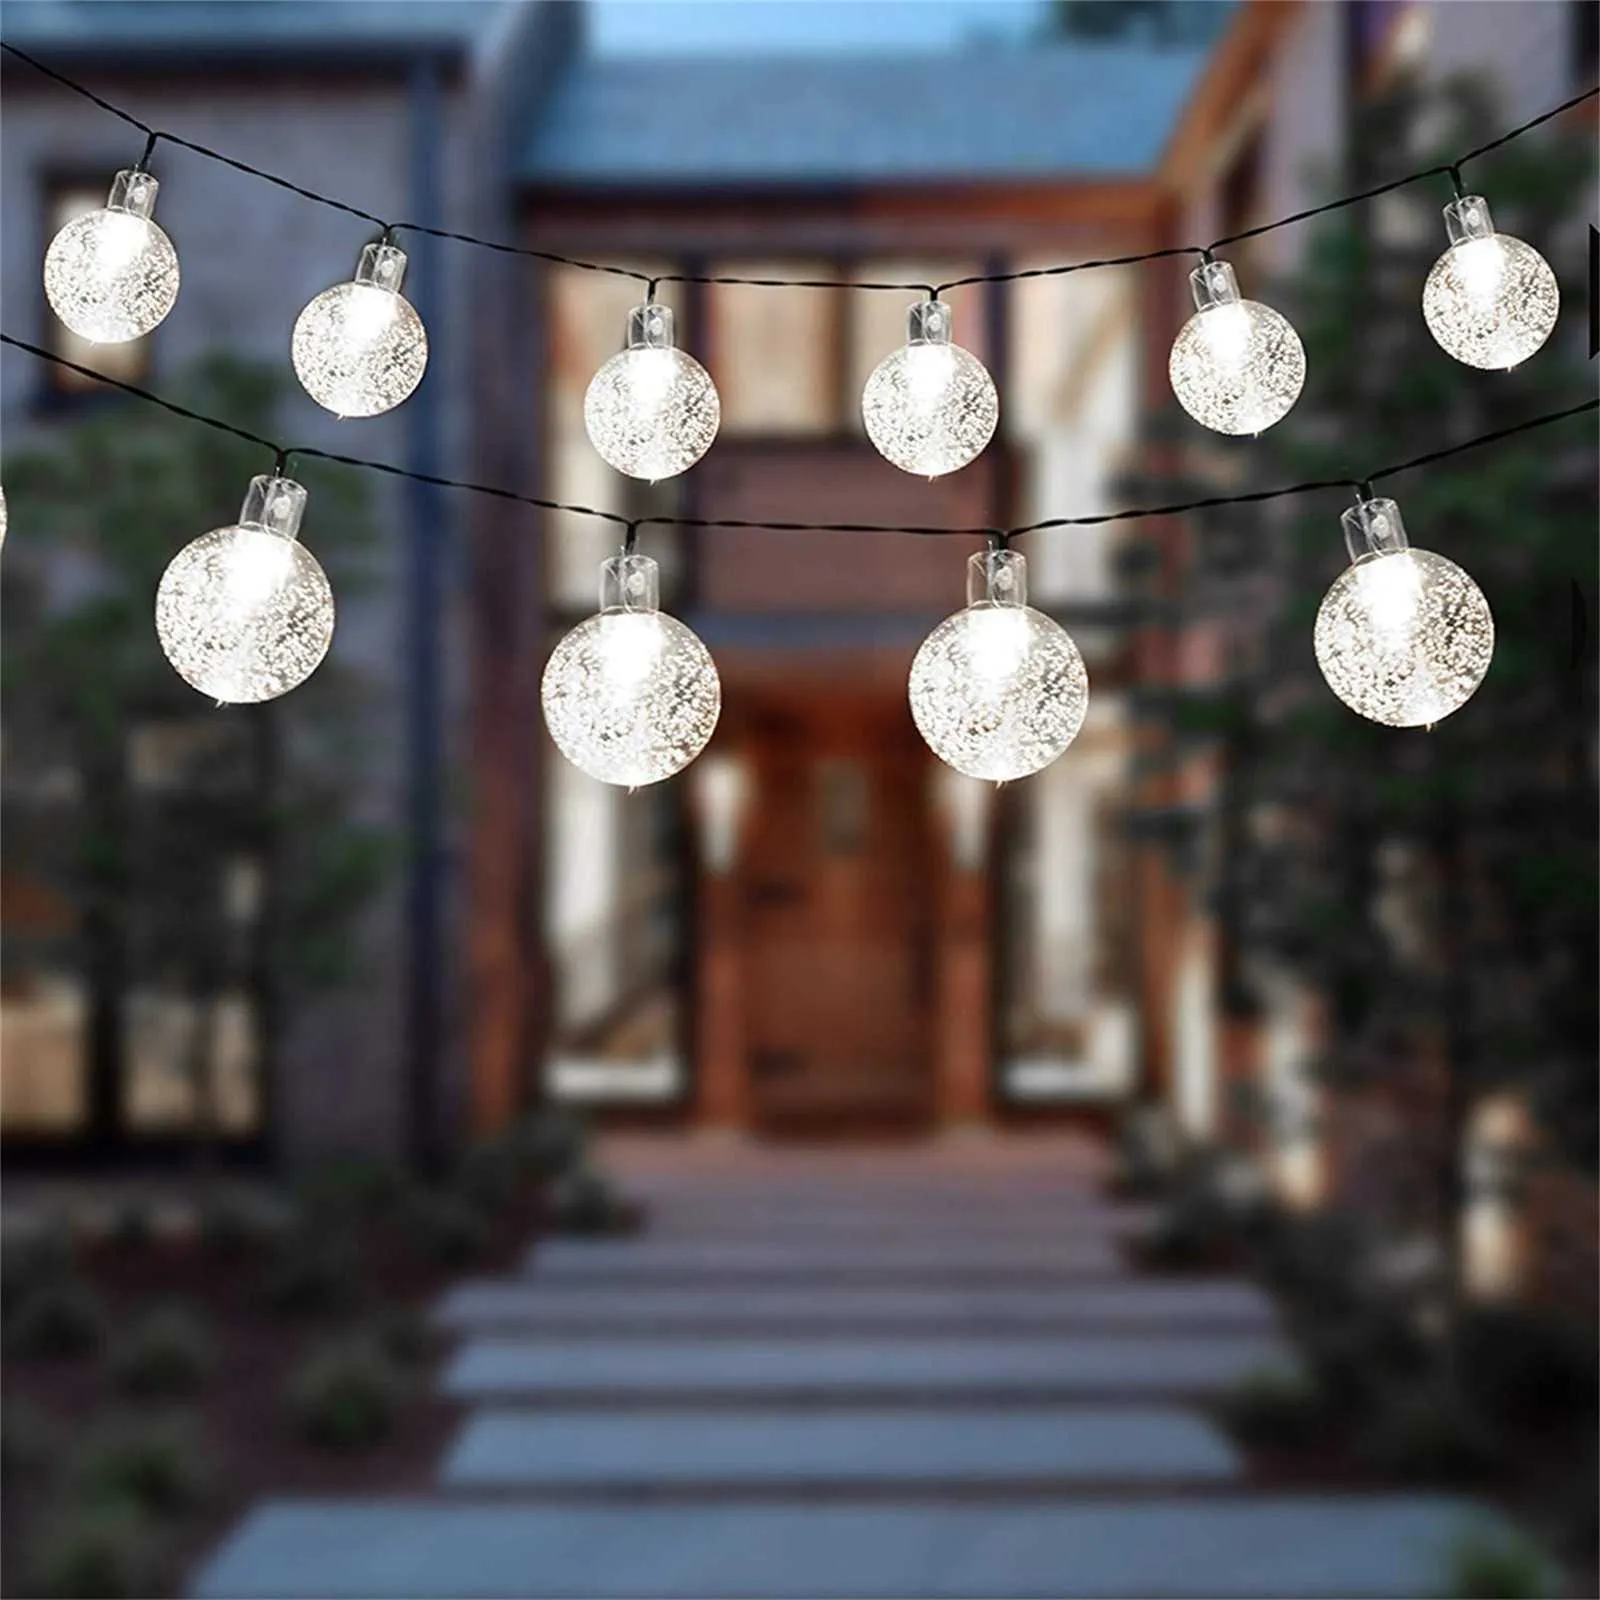 40 # 30 LED Boule de cristal 6.5M Lampe solaire Power LED String Fairy Lights Strings Guirlandes solaires Jardin Décor de Noël pour l'extérieur Y0720